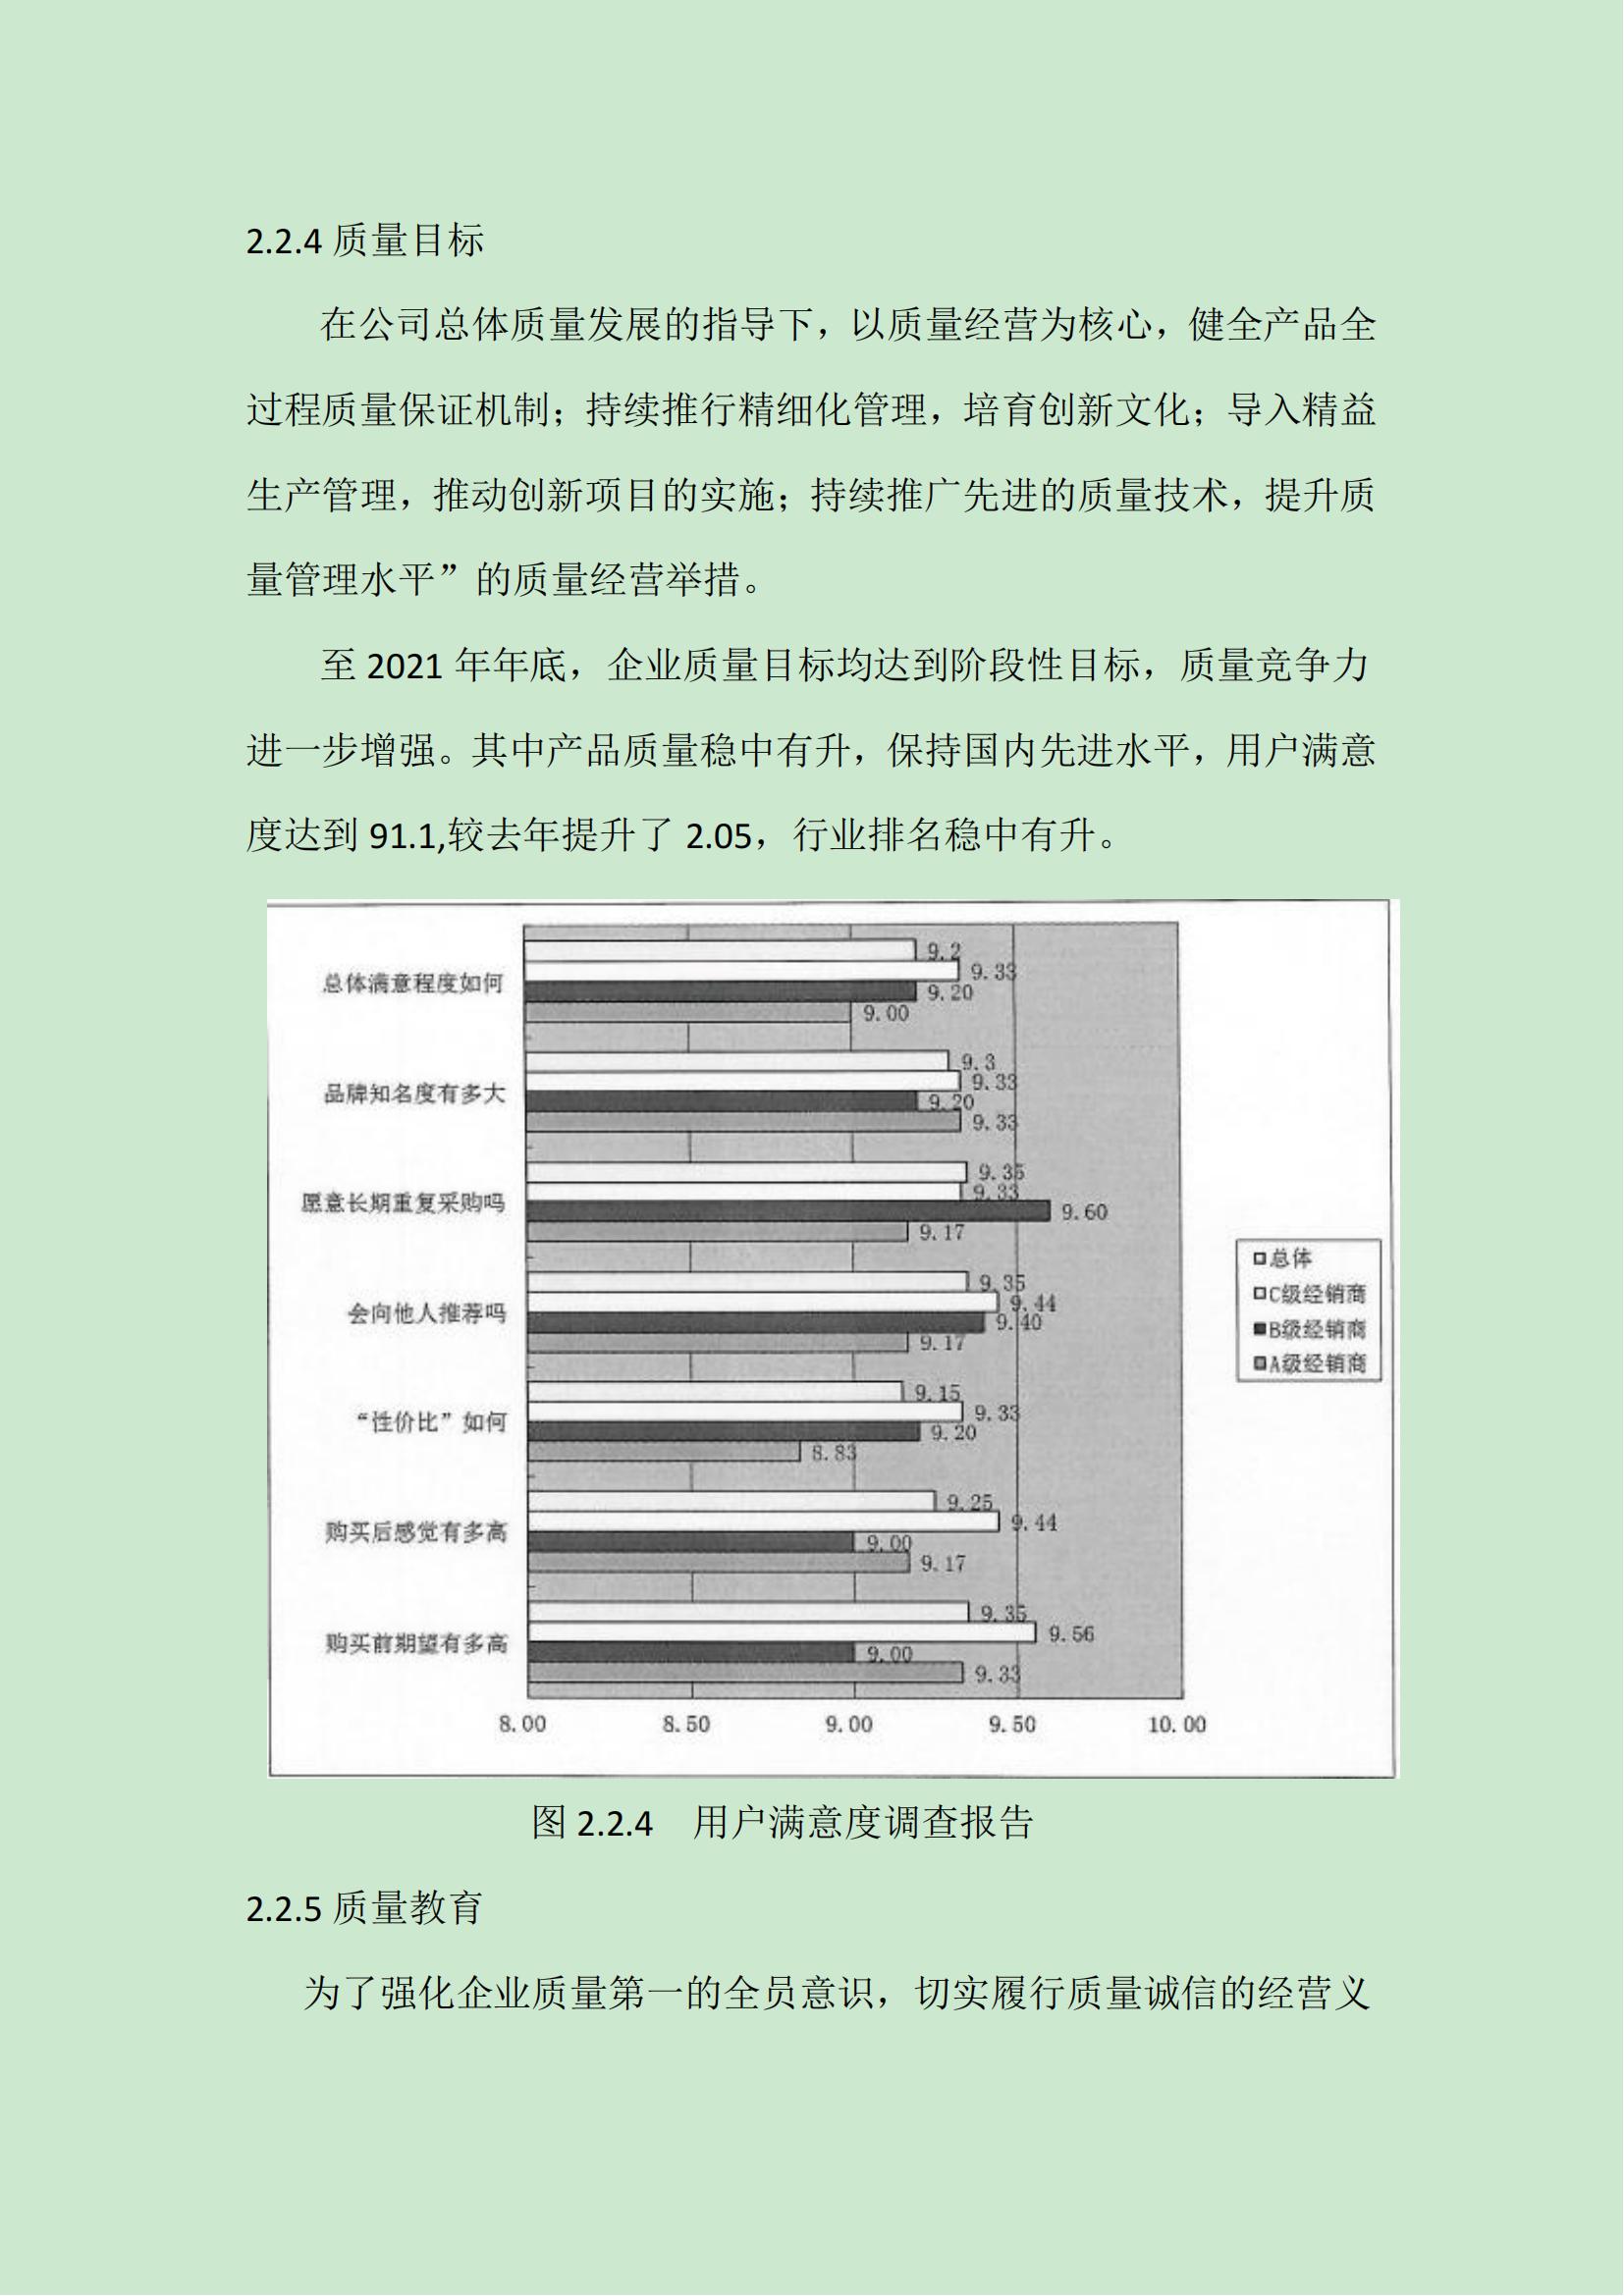 中新钢铁集团有限公司质量信用报告（2021版）(1)(1)_14